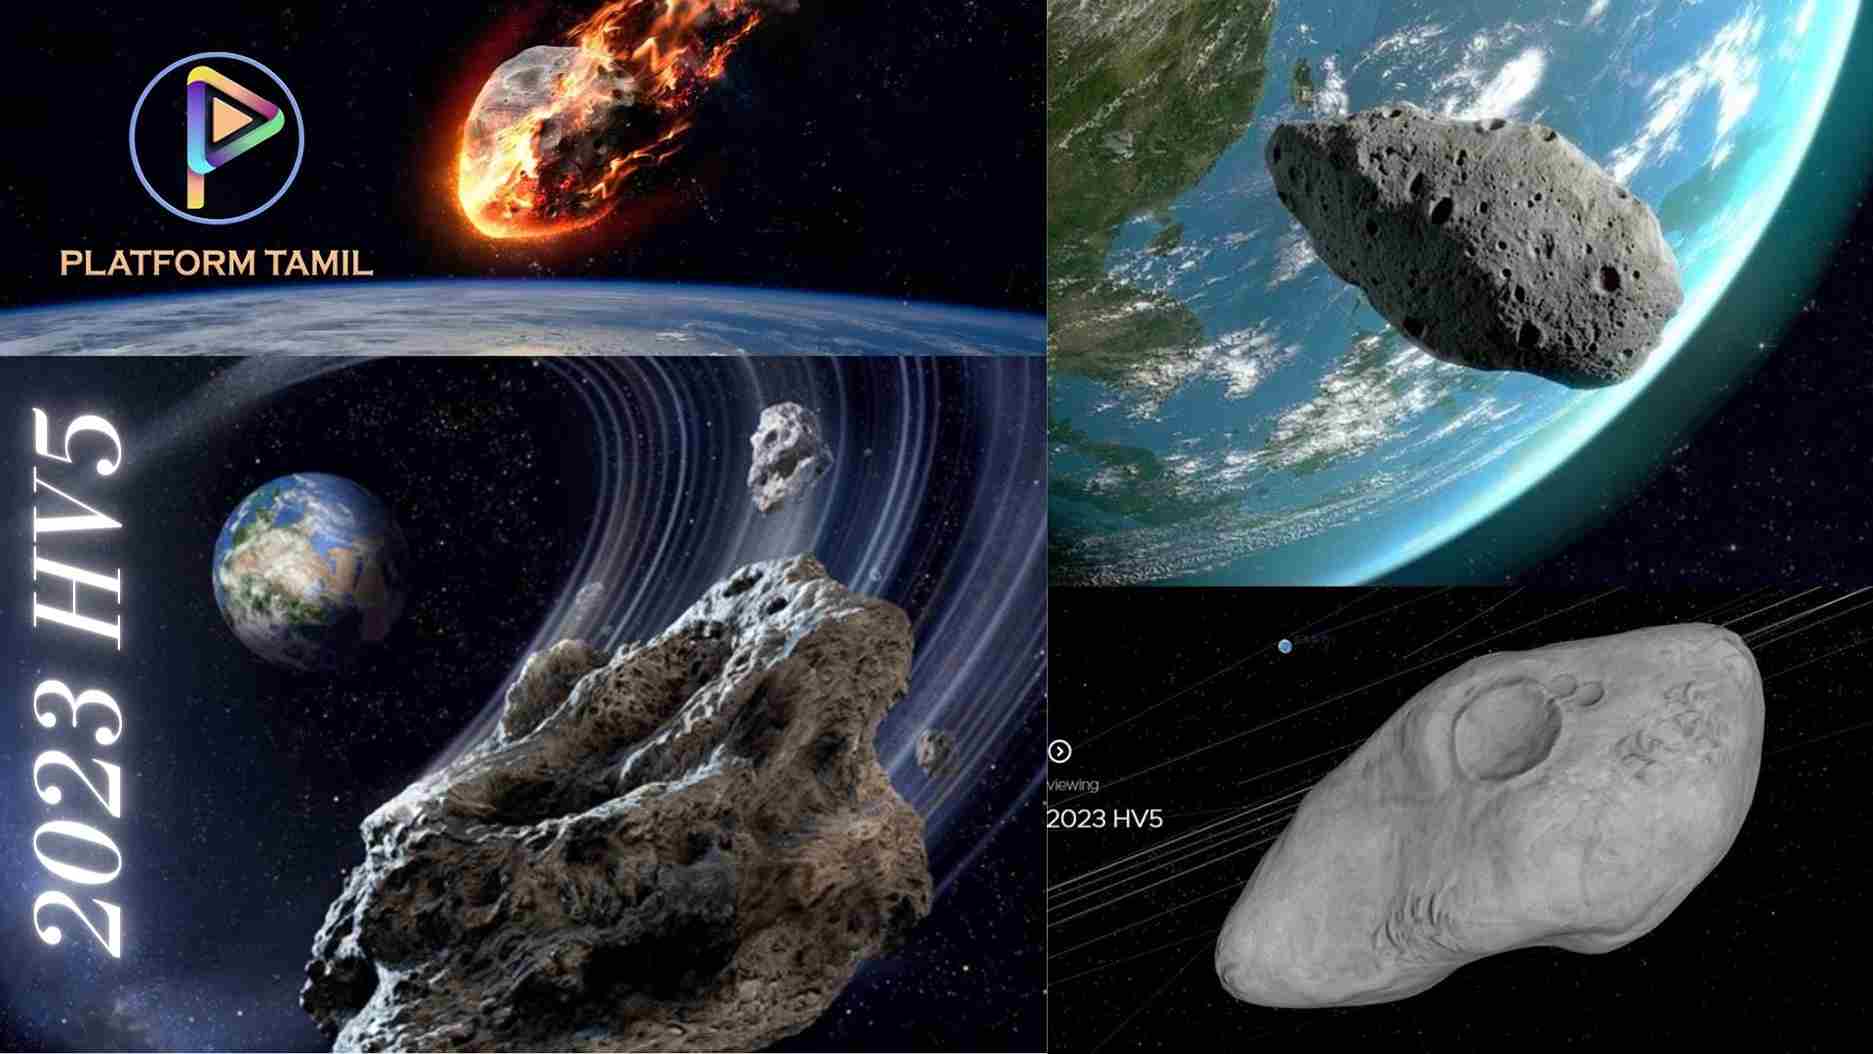 பூமியை கடக்கும் Asteroid 2023 HV5 ராட்சத சிறுகோள் - Platform Tamil